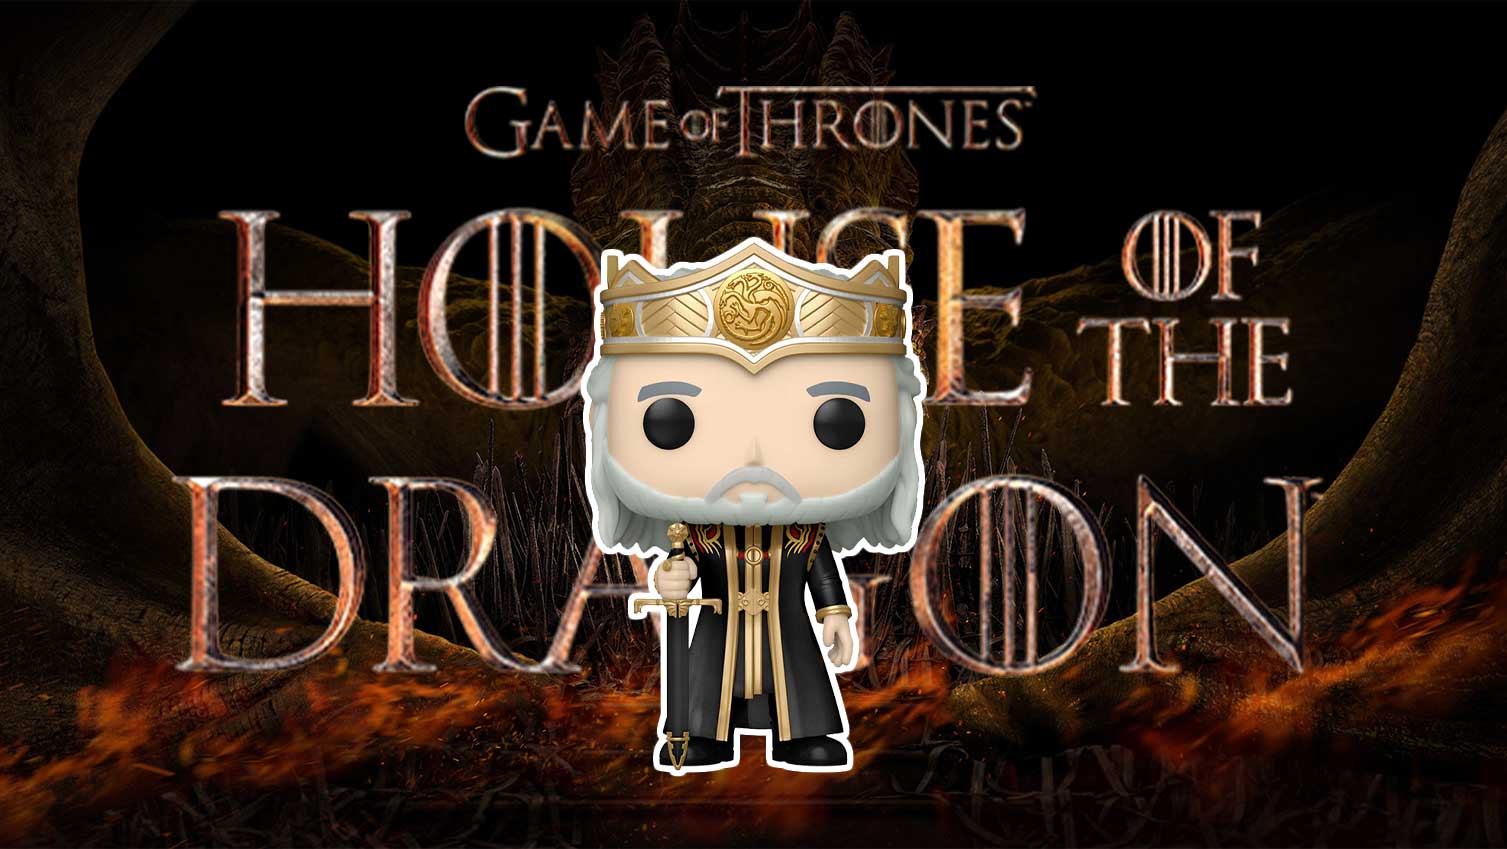 Pop! House of Dragon - Viserys Targaryen #02 - Comic Spot